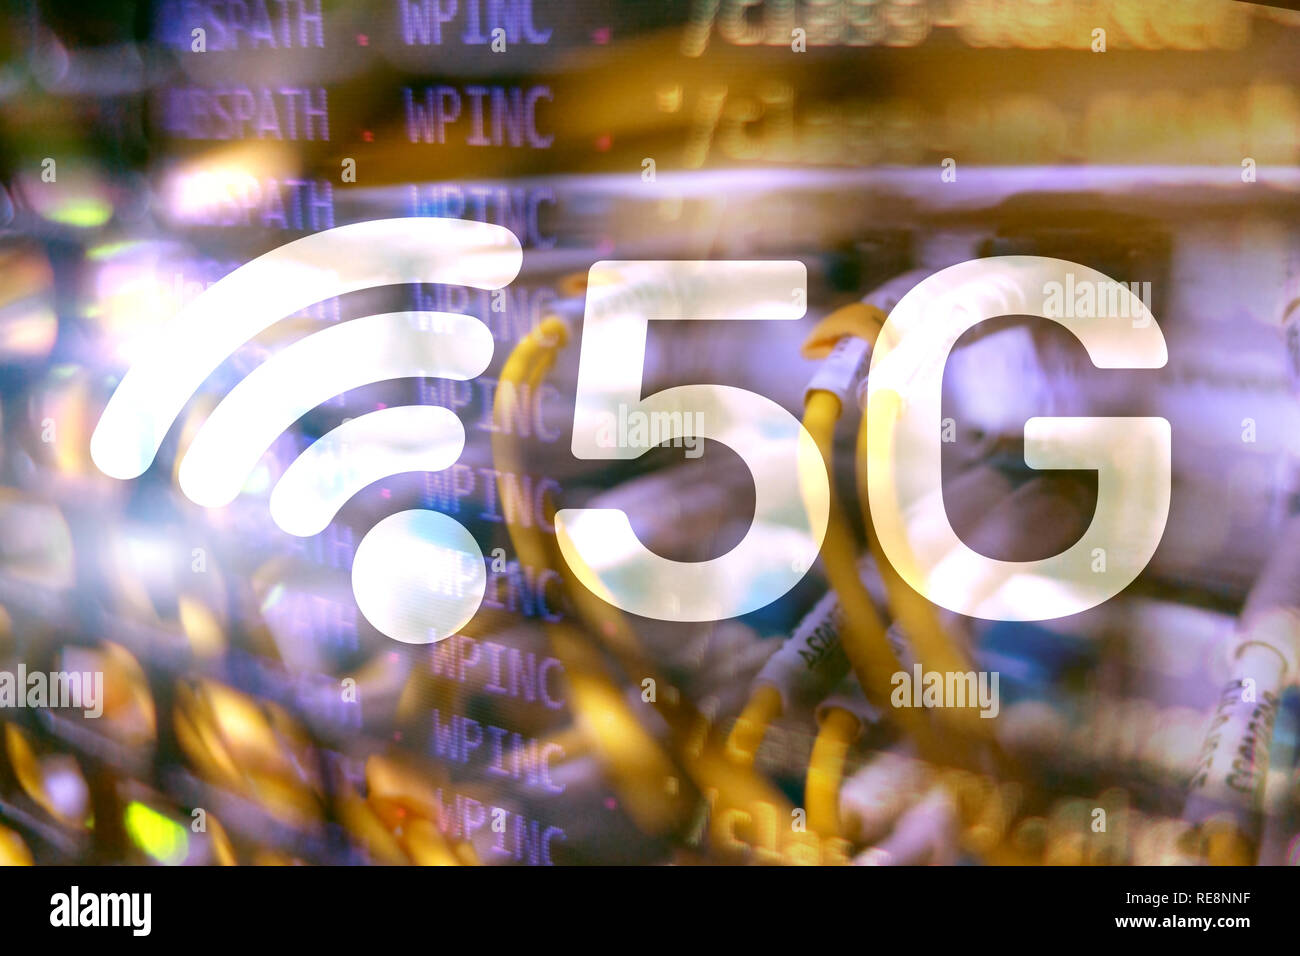 5G La connexion internet sans fil rapide des technologies mobiles de communication concept Banque D'Images